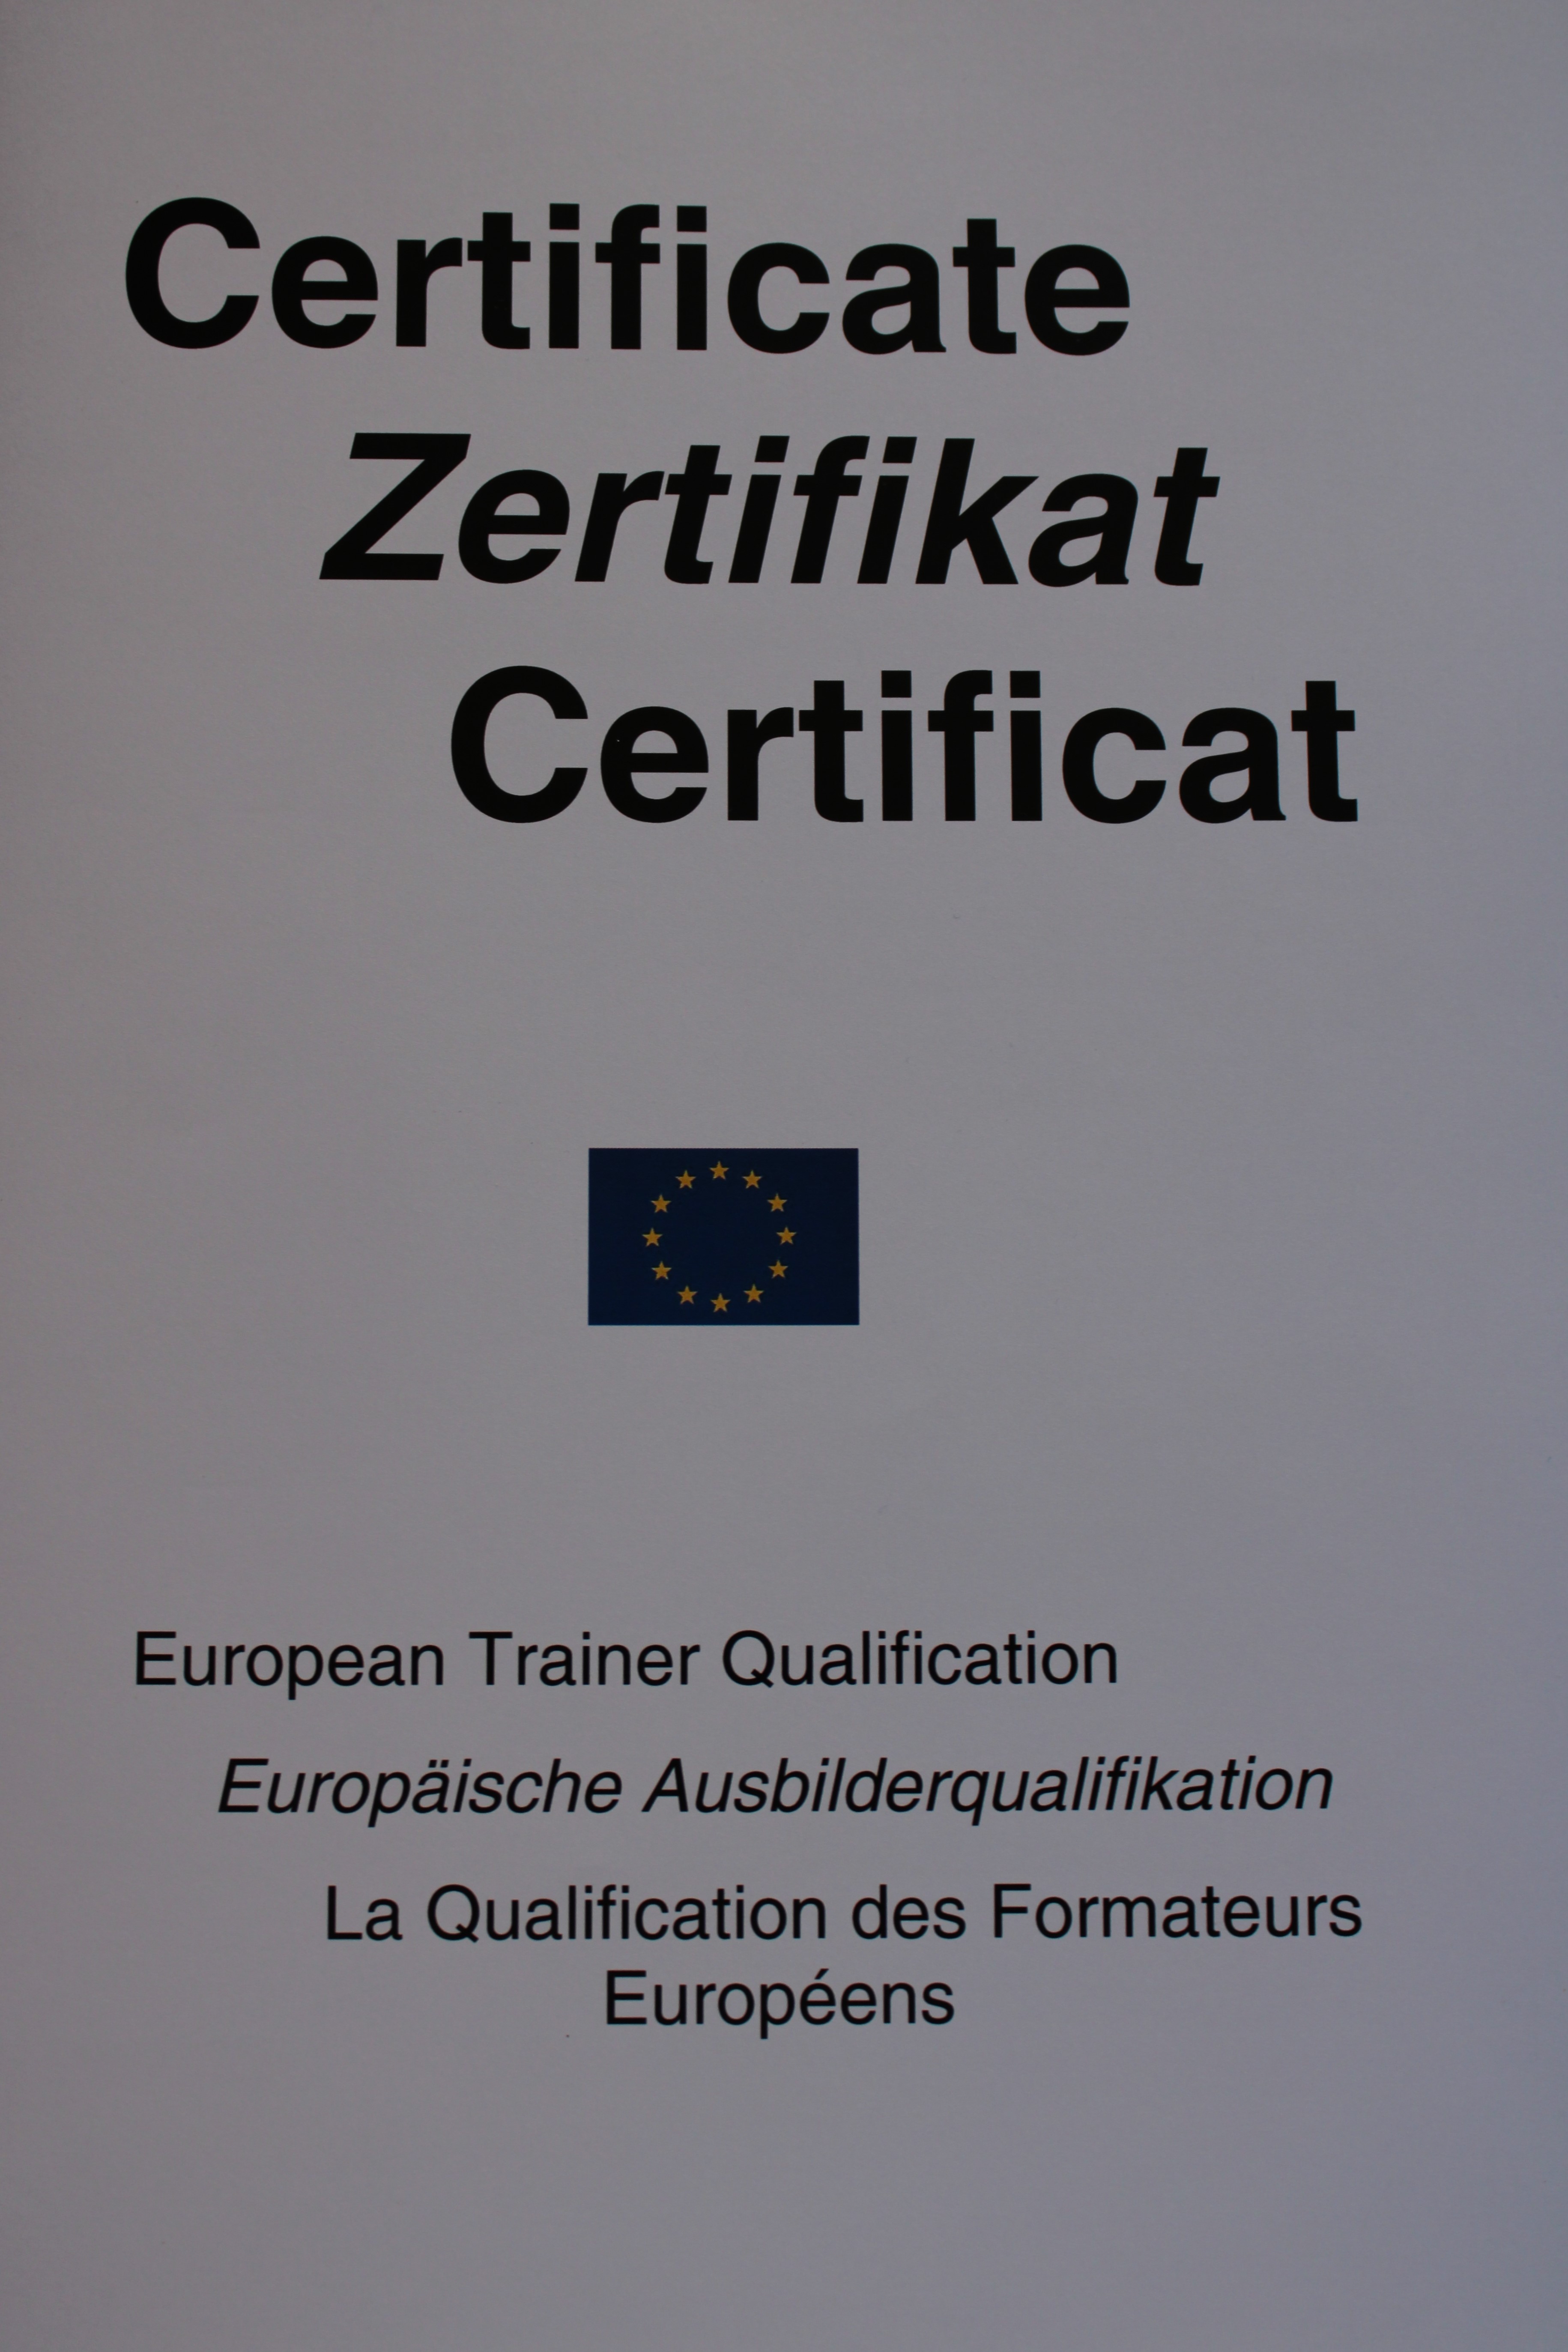 European Trainer Qualification